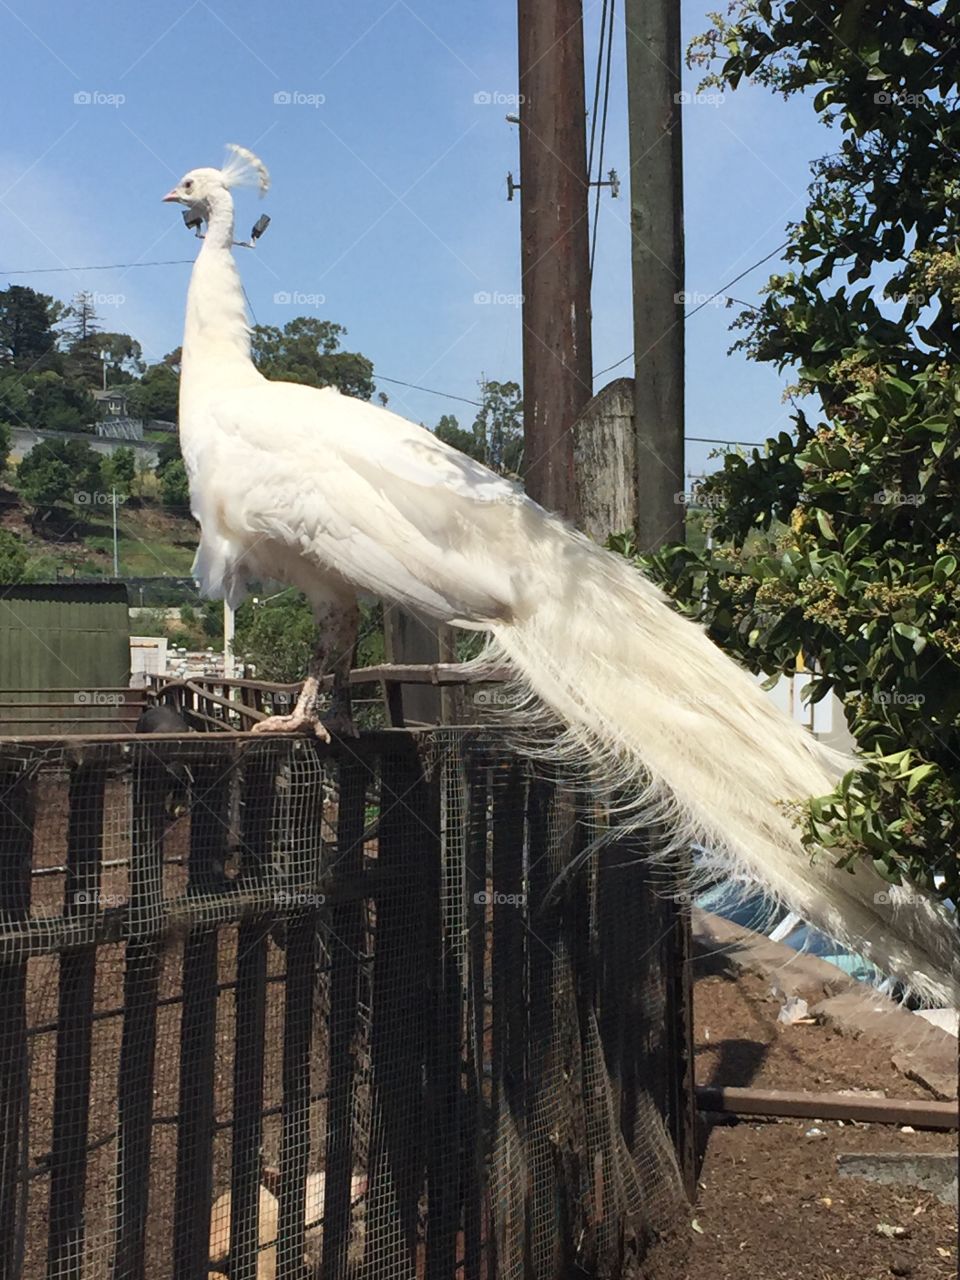 Albino white peacock on urban fence